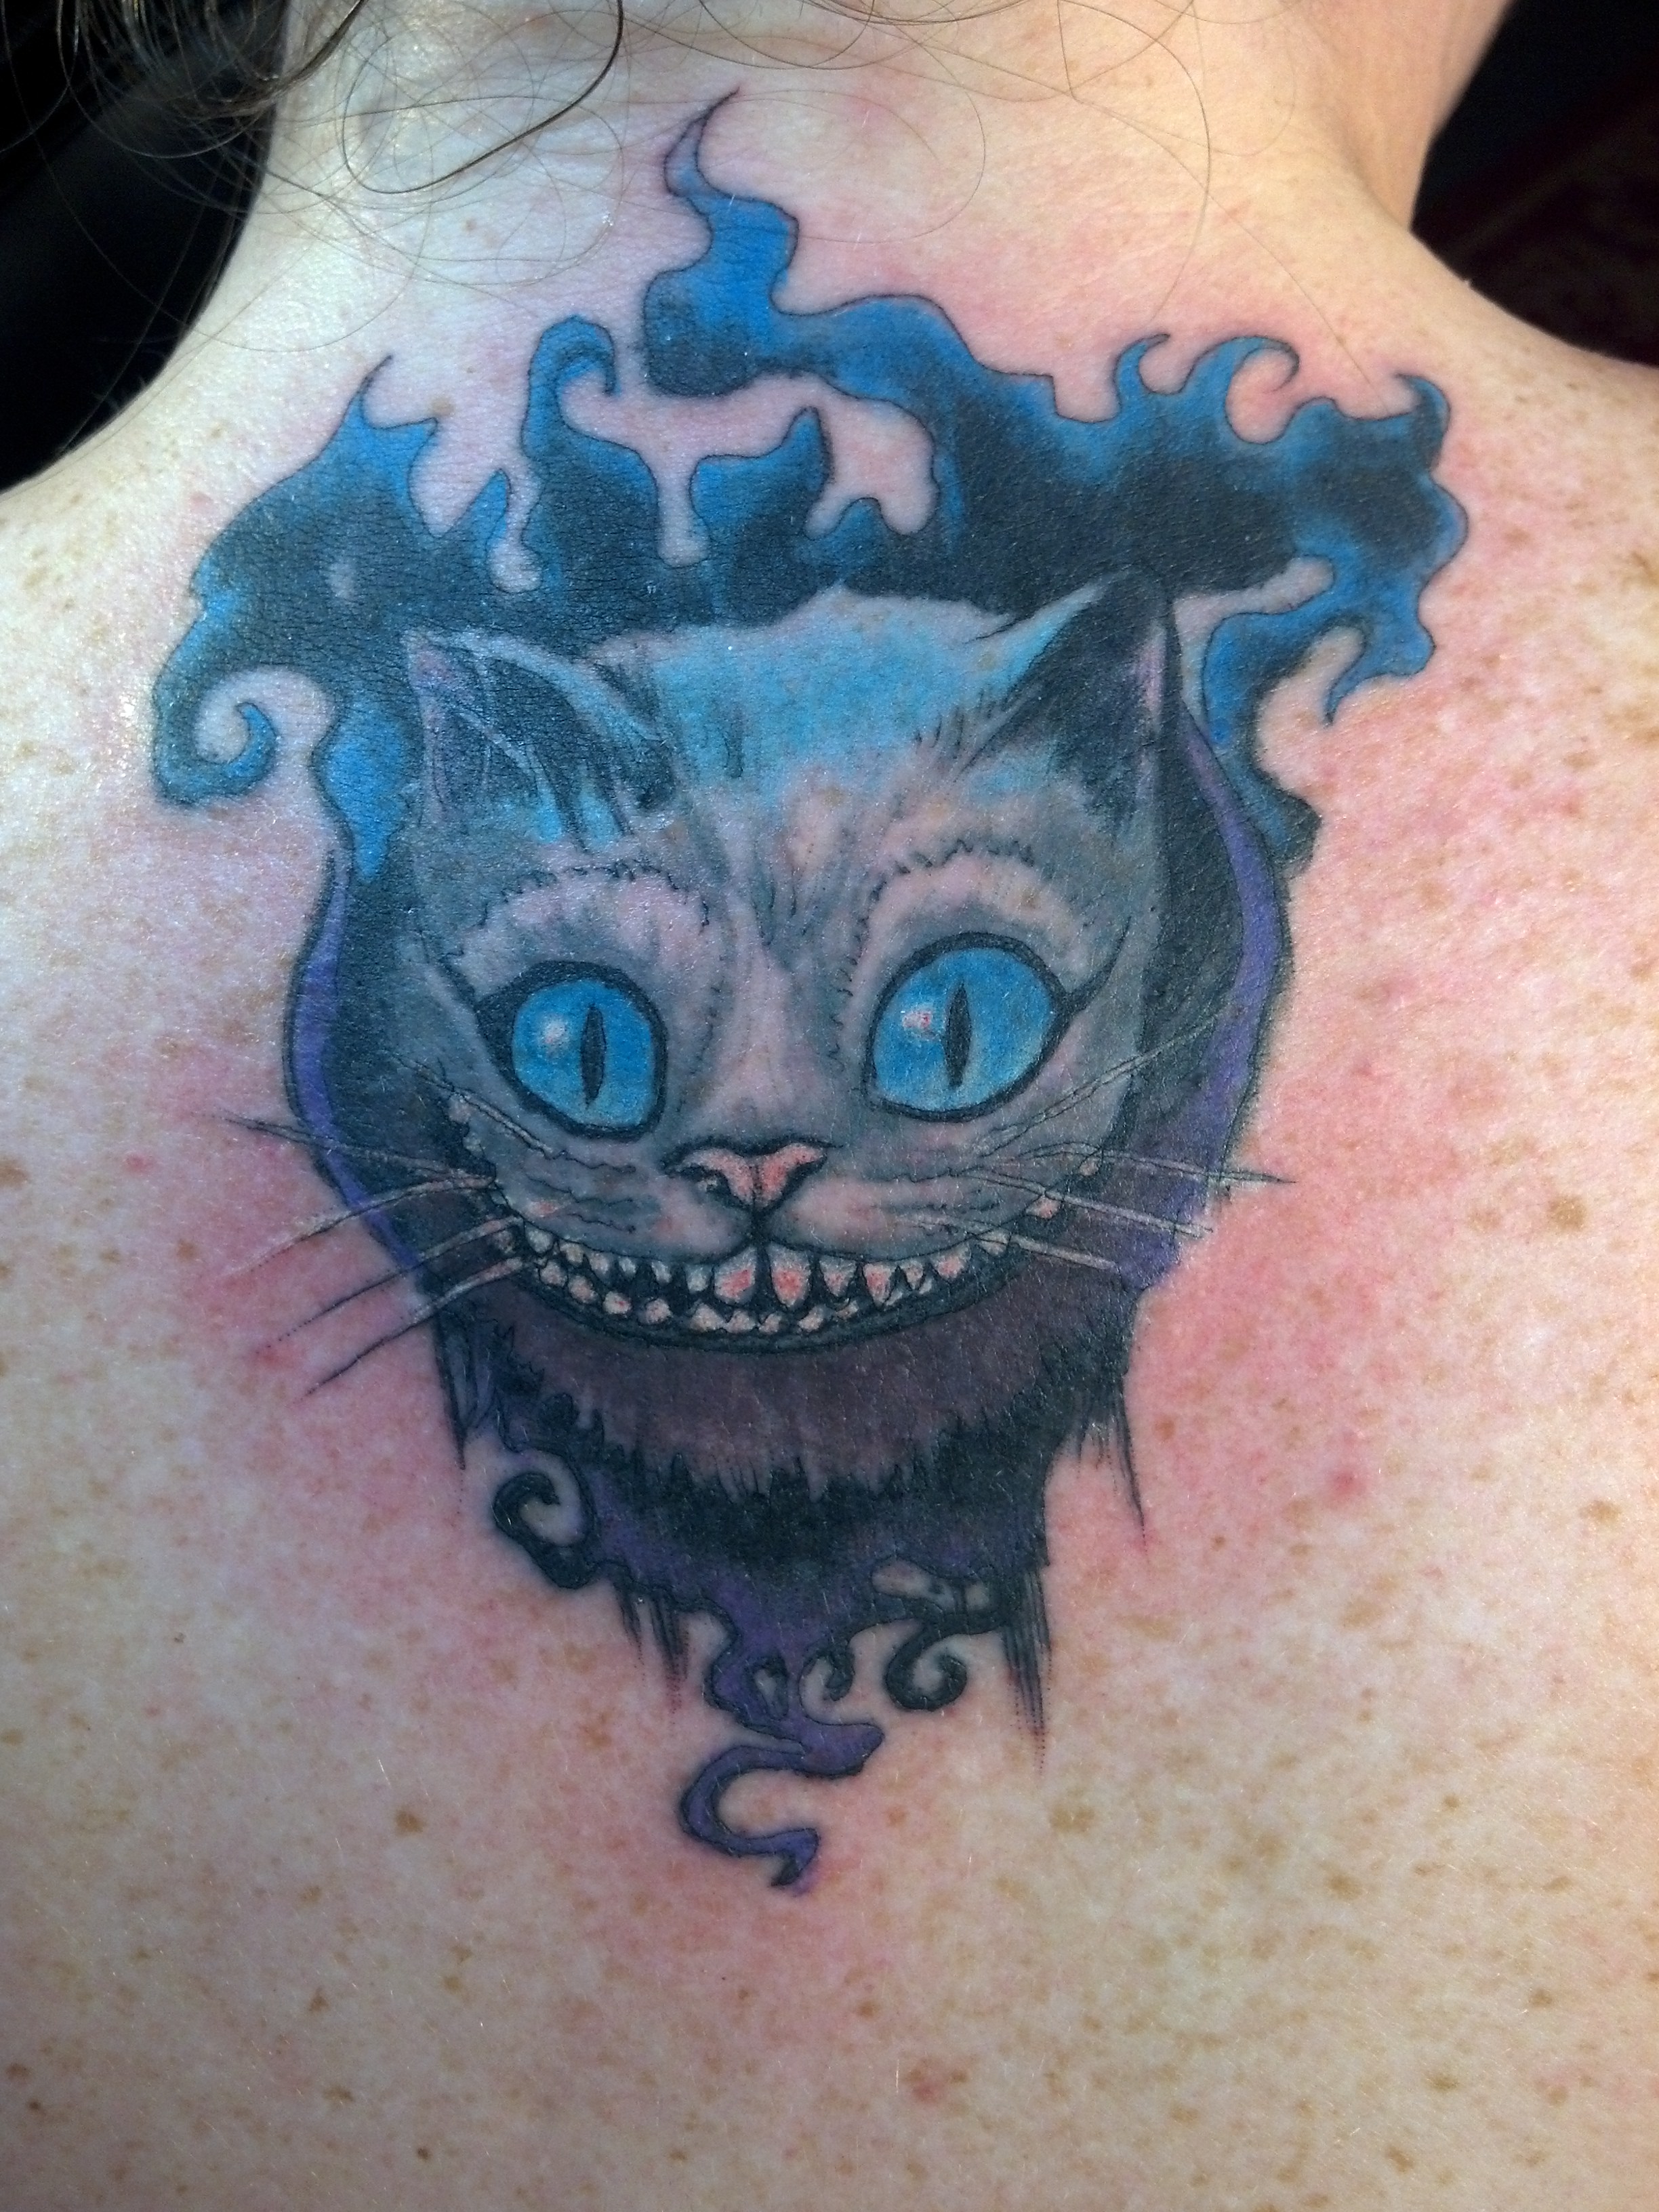 Smoky Cheshire cat